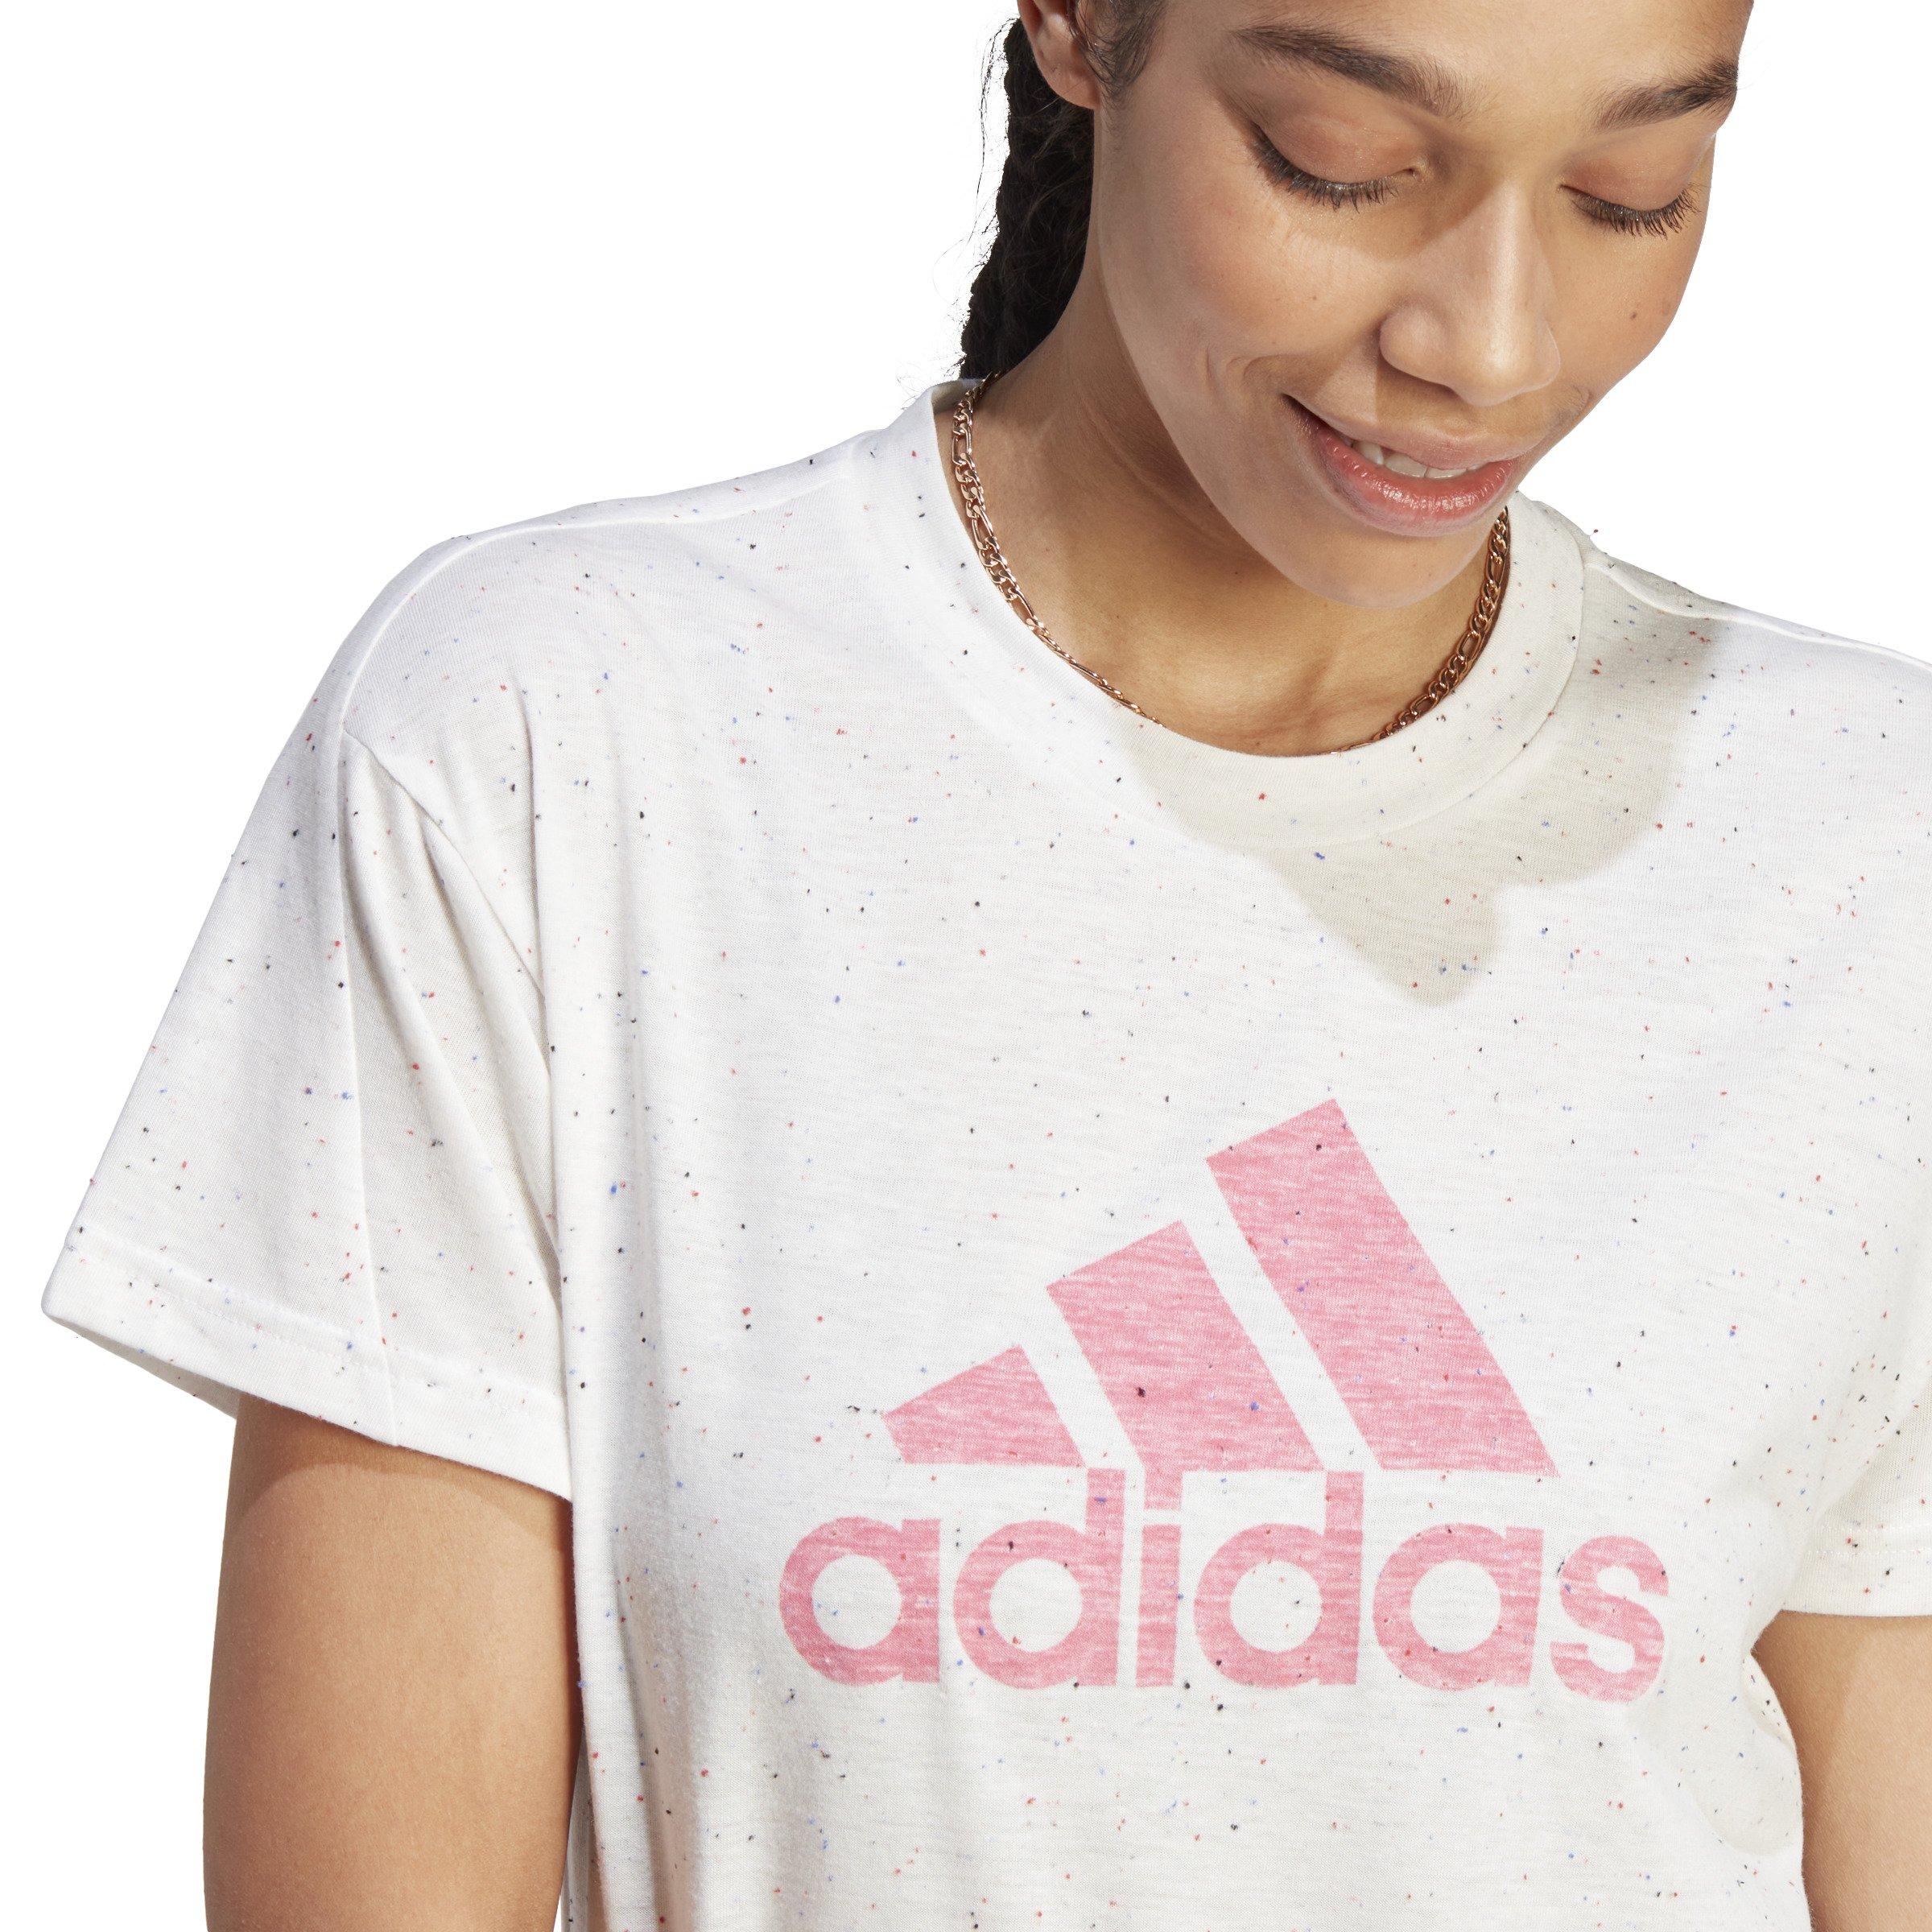 adidas Women\'s Future Icons Winners T-Shirt - White